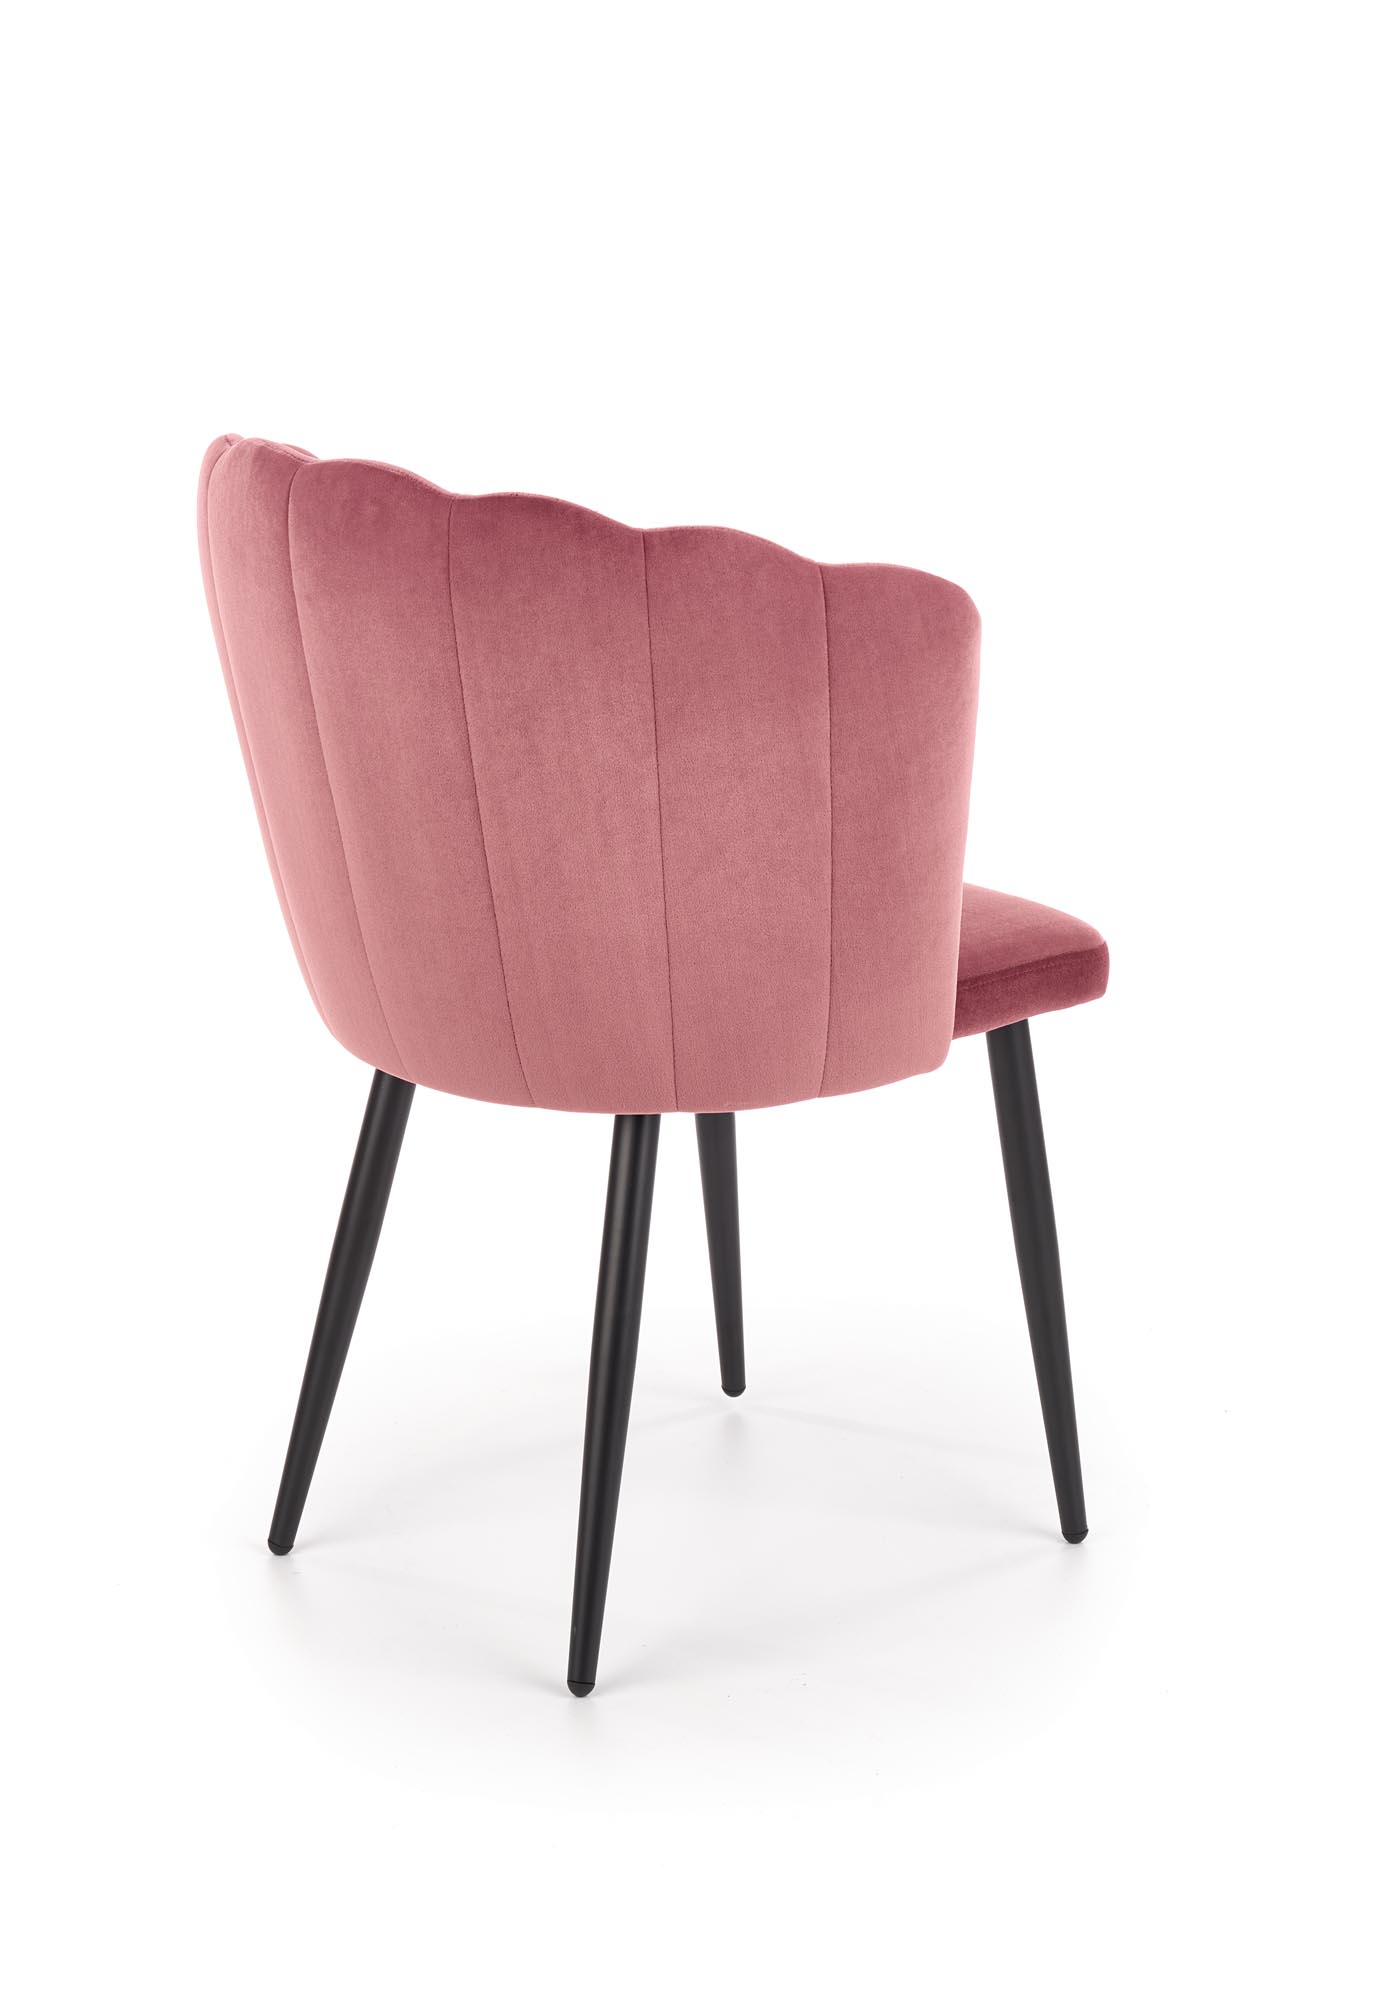 K386 krzesło różowy  k386 krzesło różowy 